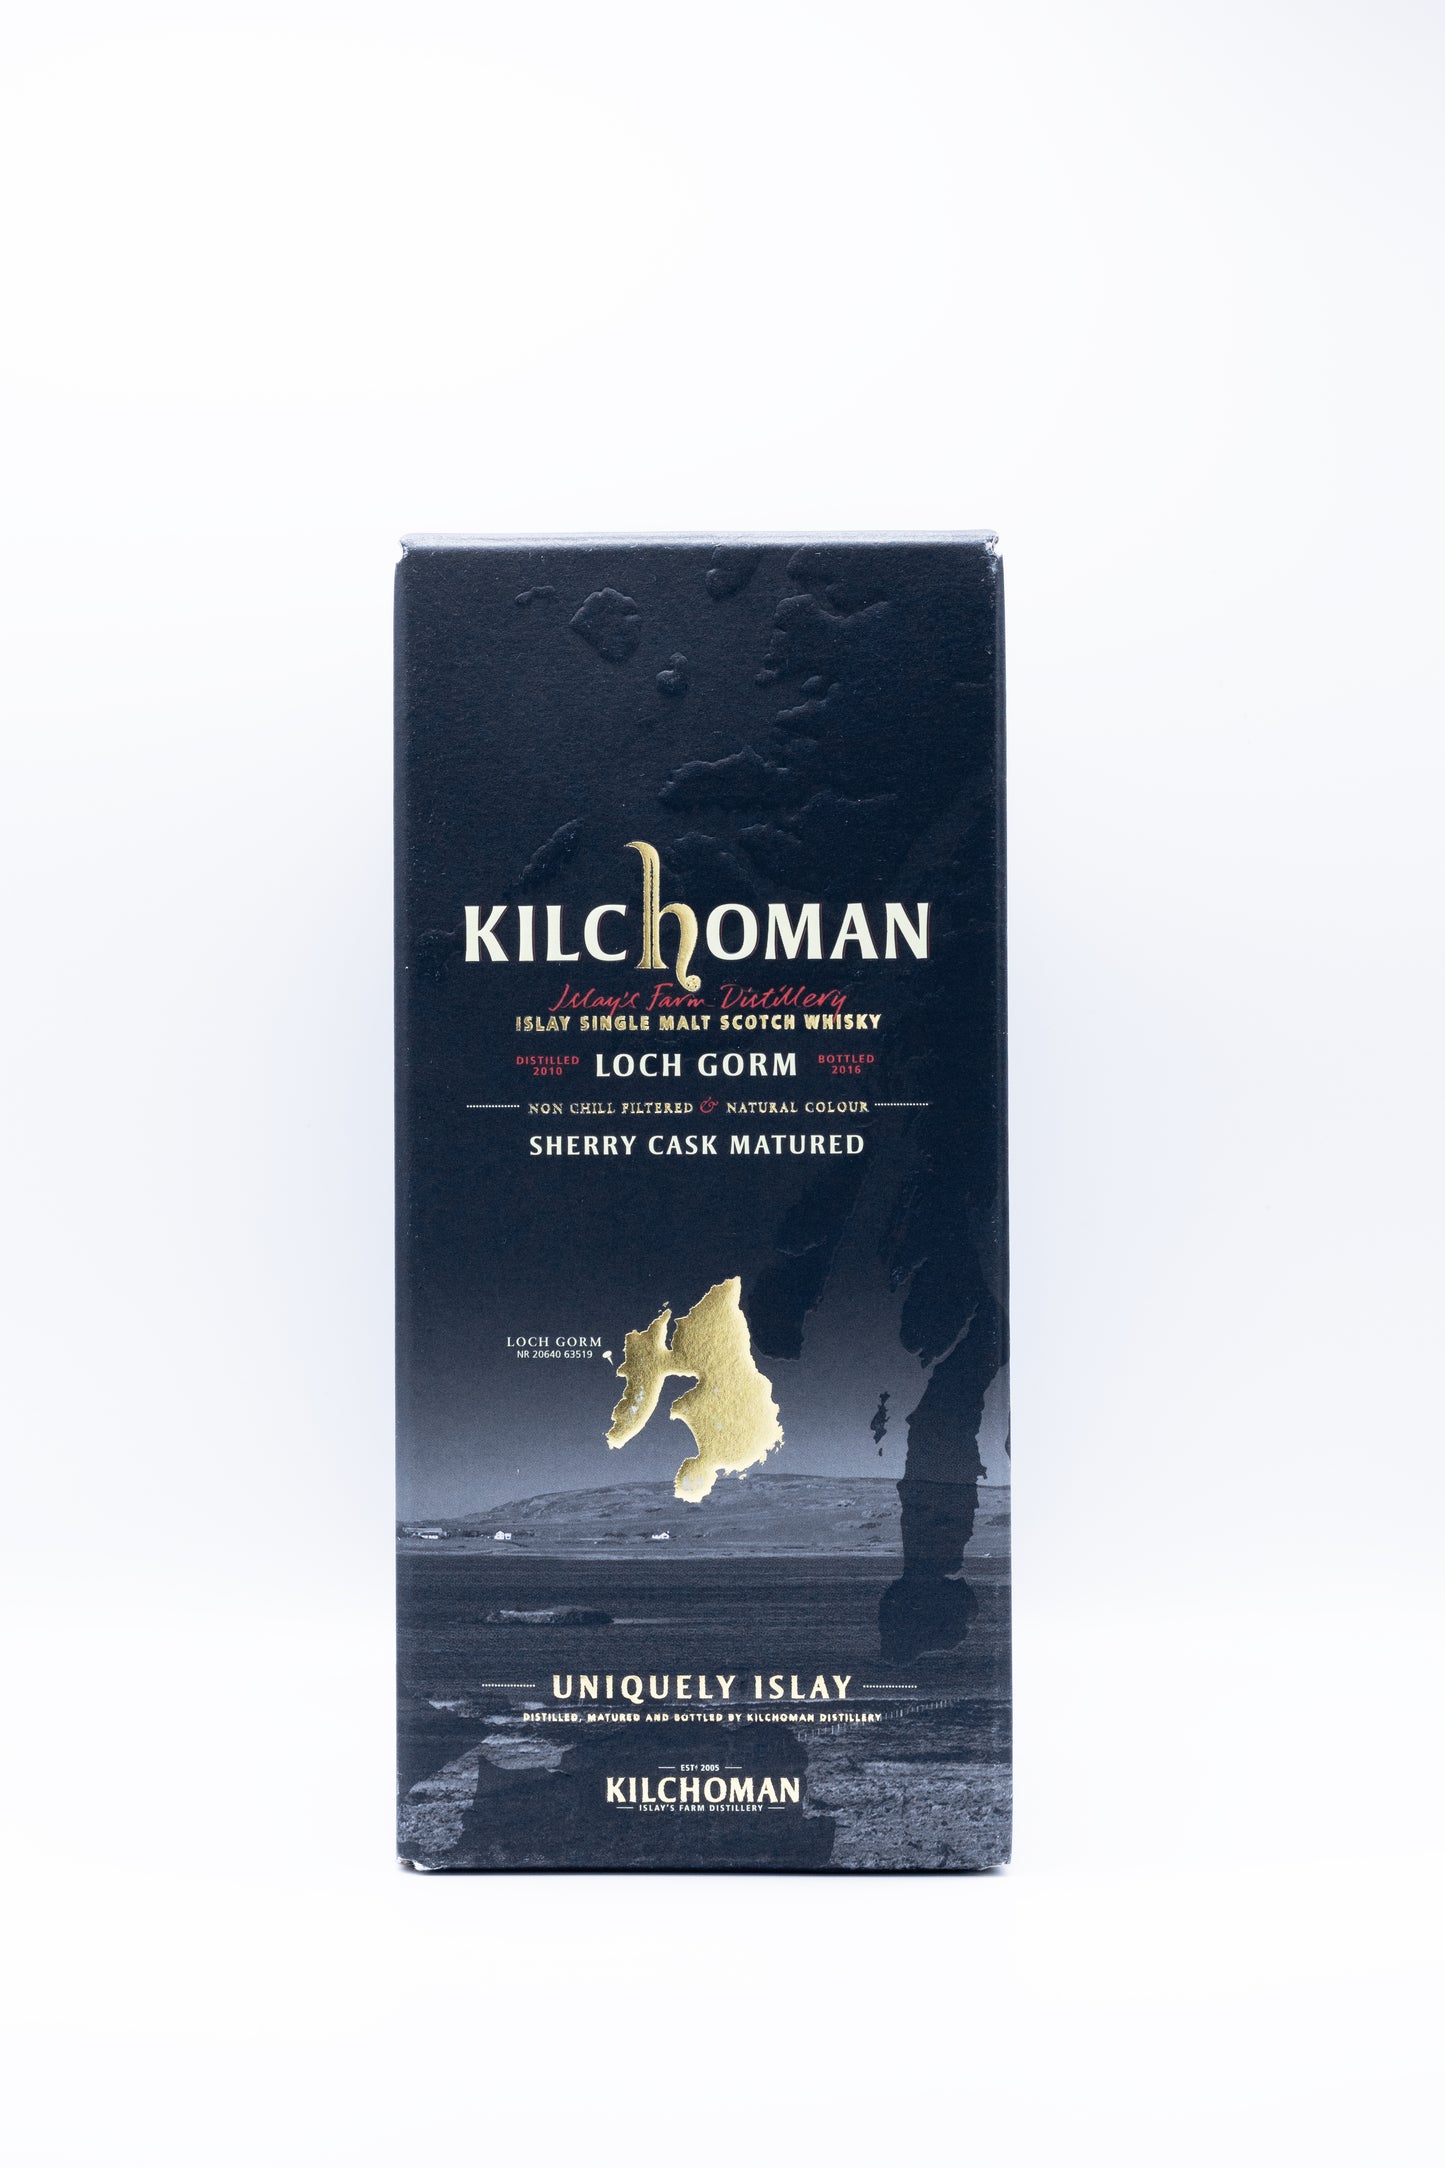 Kilchoman Loch Gorm 2016 Sherry Cask Matured